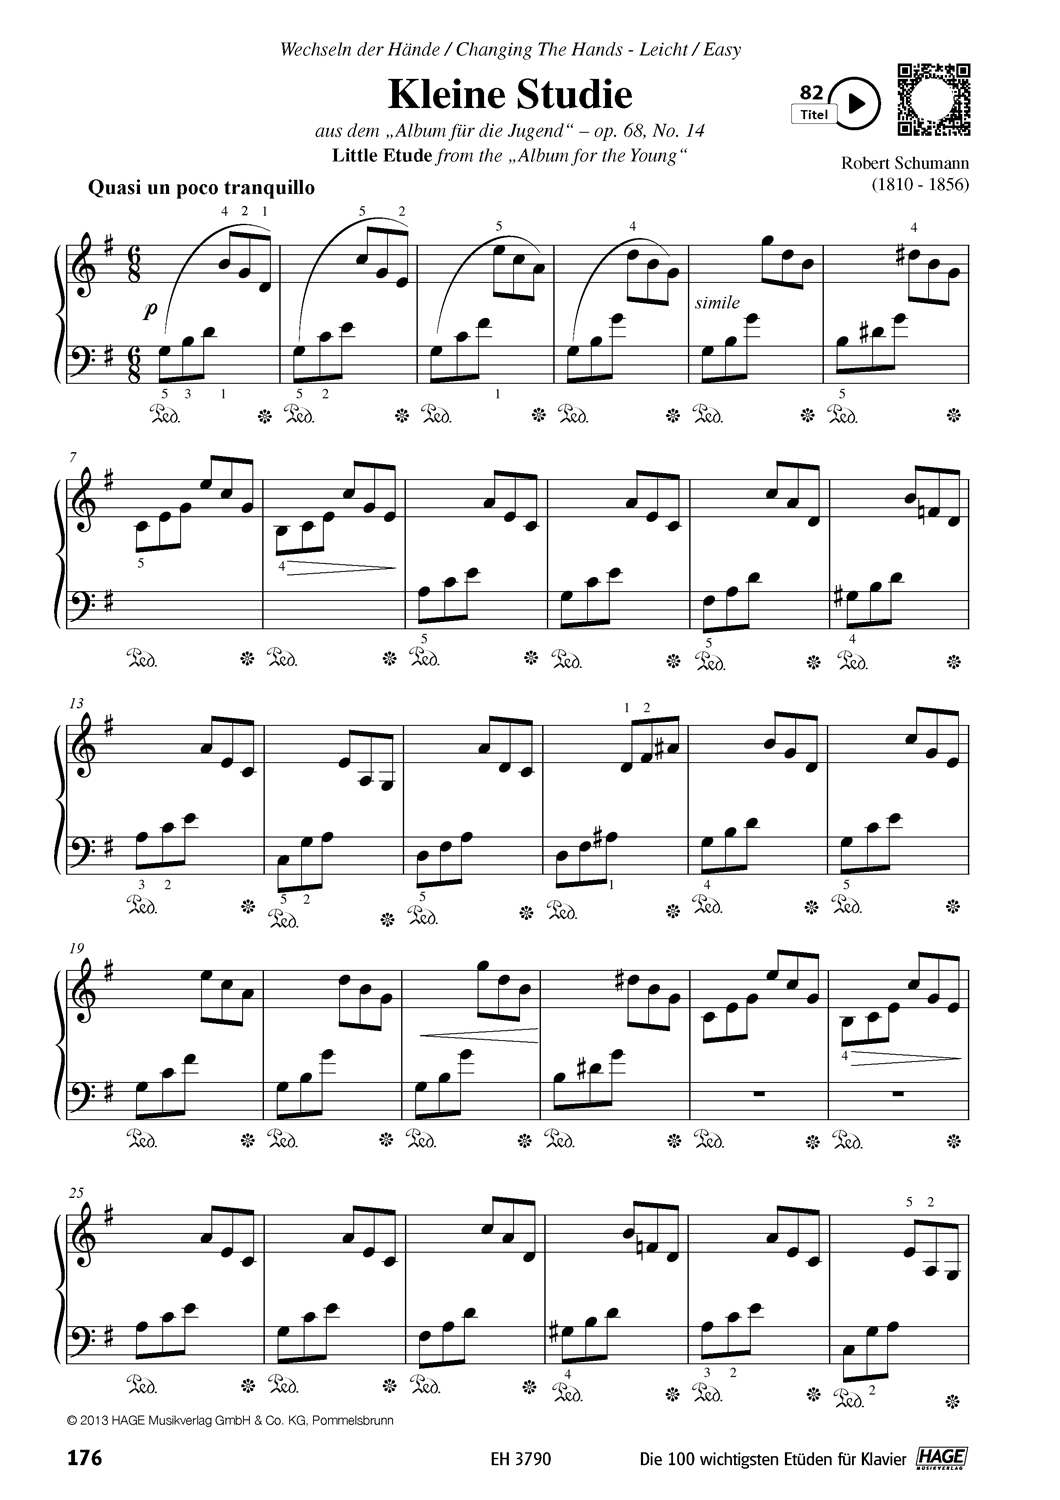 Die 100 wichtigsten Etüden für Klavier Seiten 11